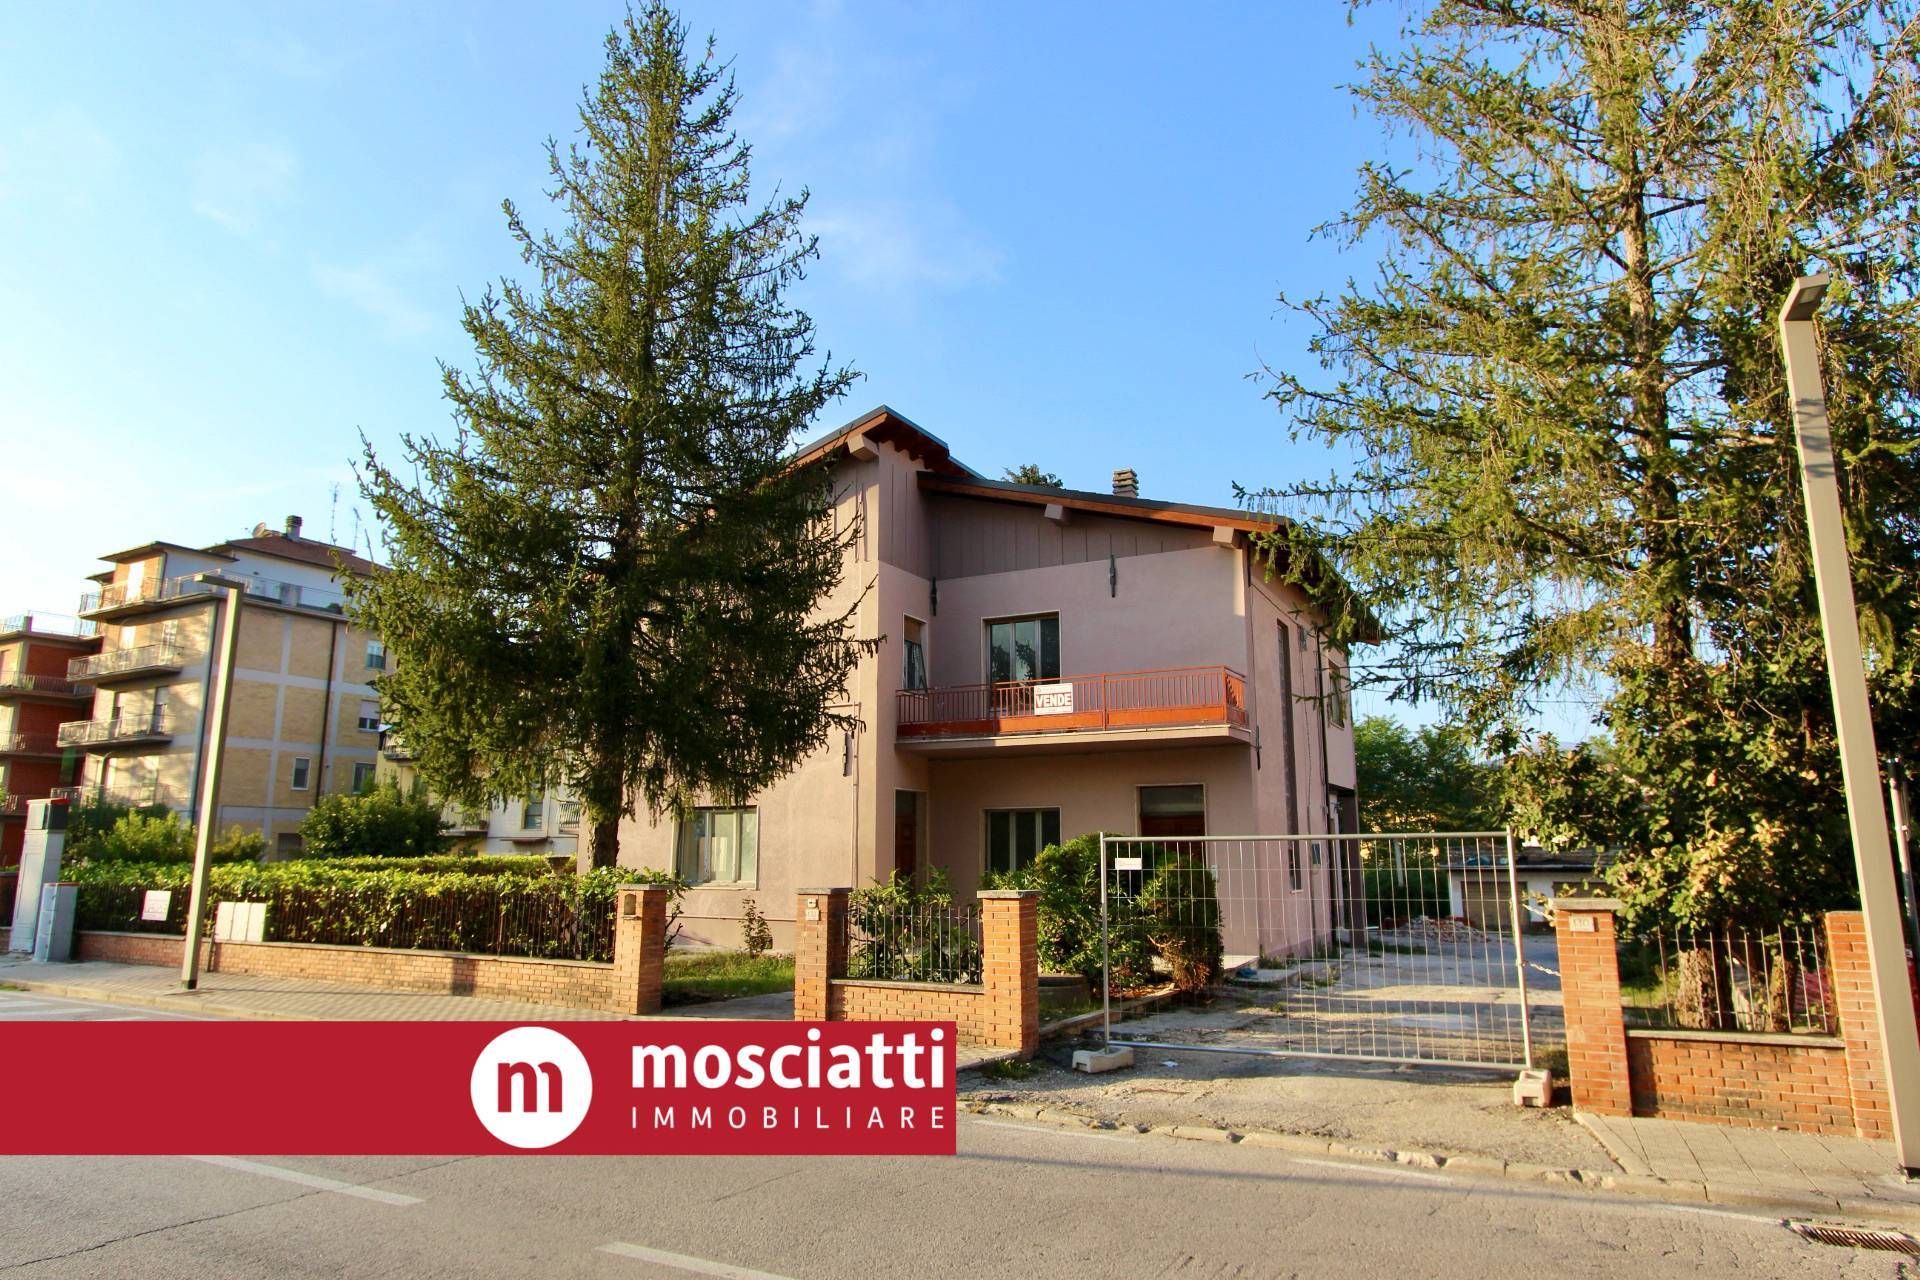 Appartamento in vendita a Castelraimondo, 4 locali, prezzo € 120.000 | PortaleAgenzieImmobiliari.it